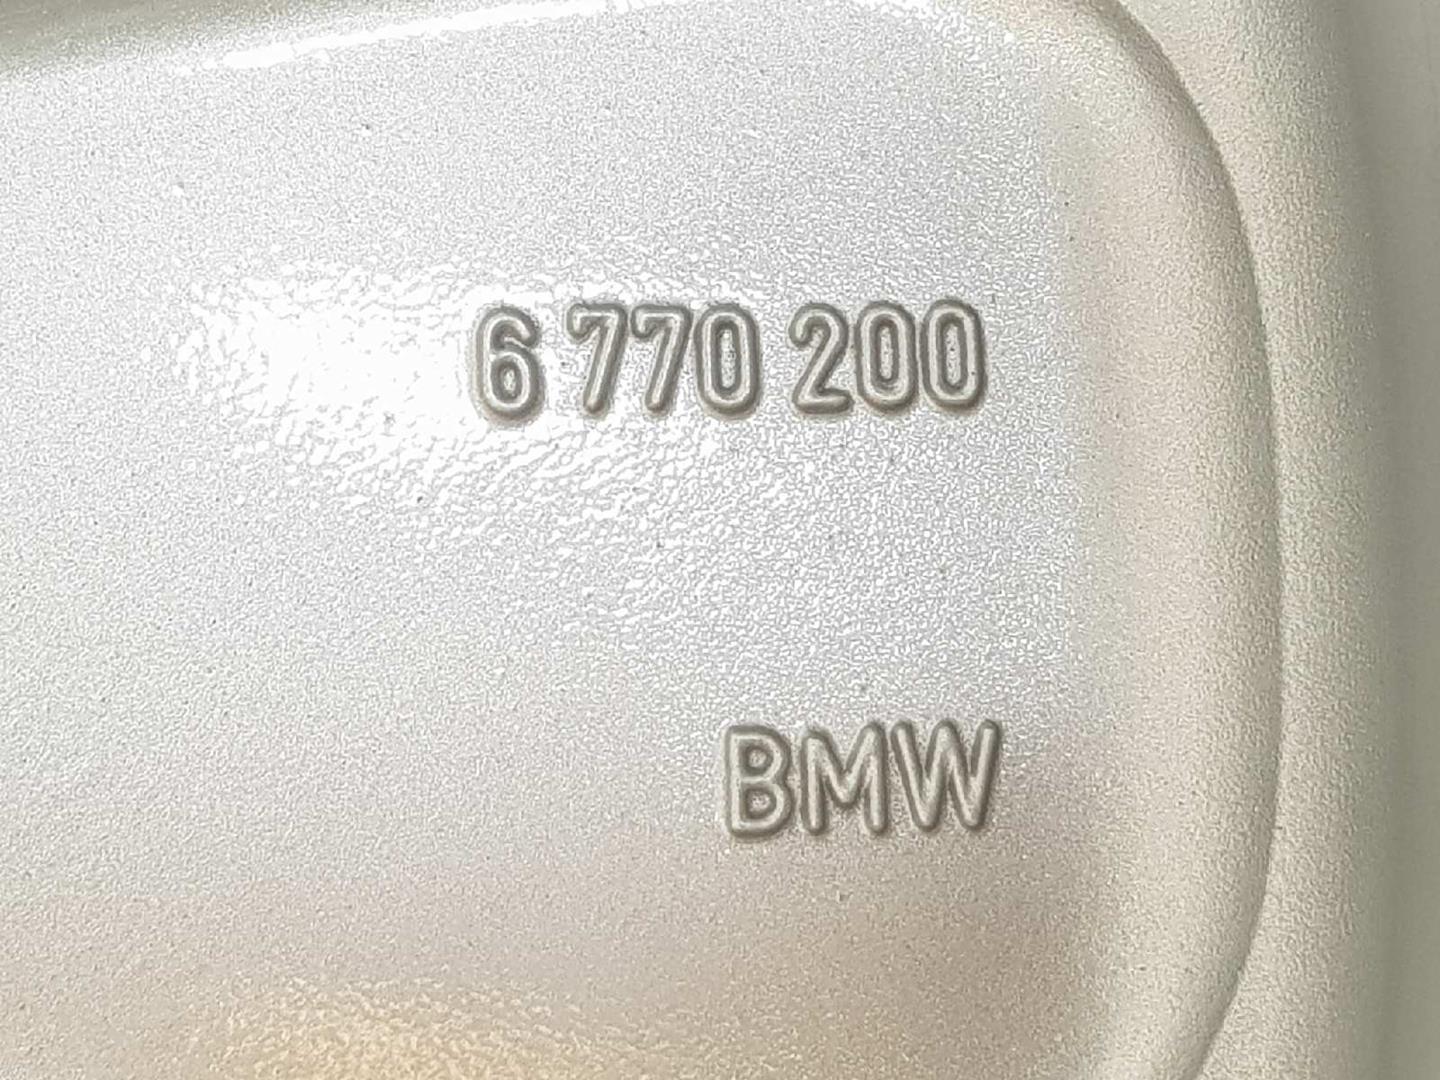 BMW X6 E71/E72 (2008-2012) Tire 6770200, 36116770200 19750106